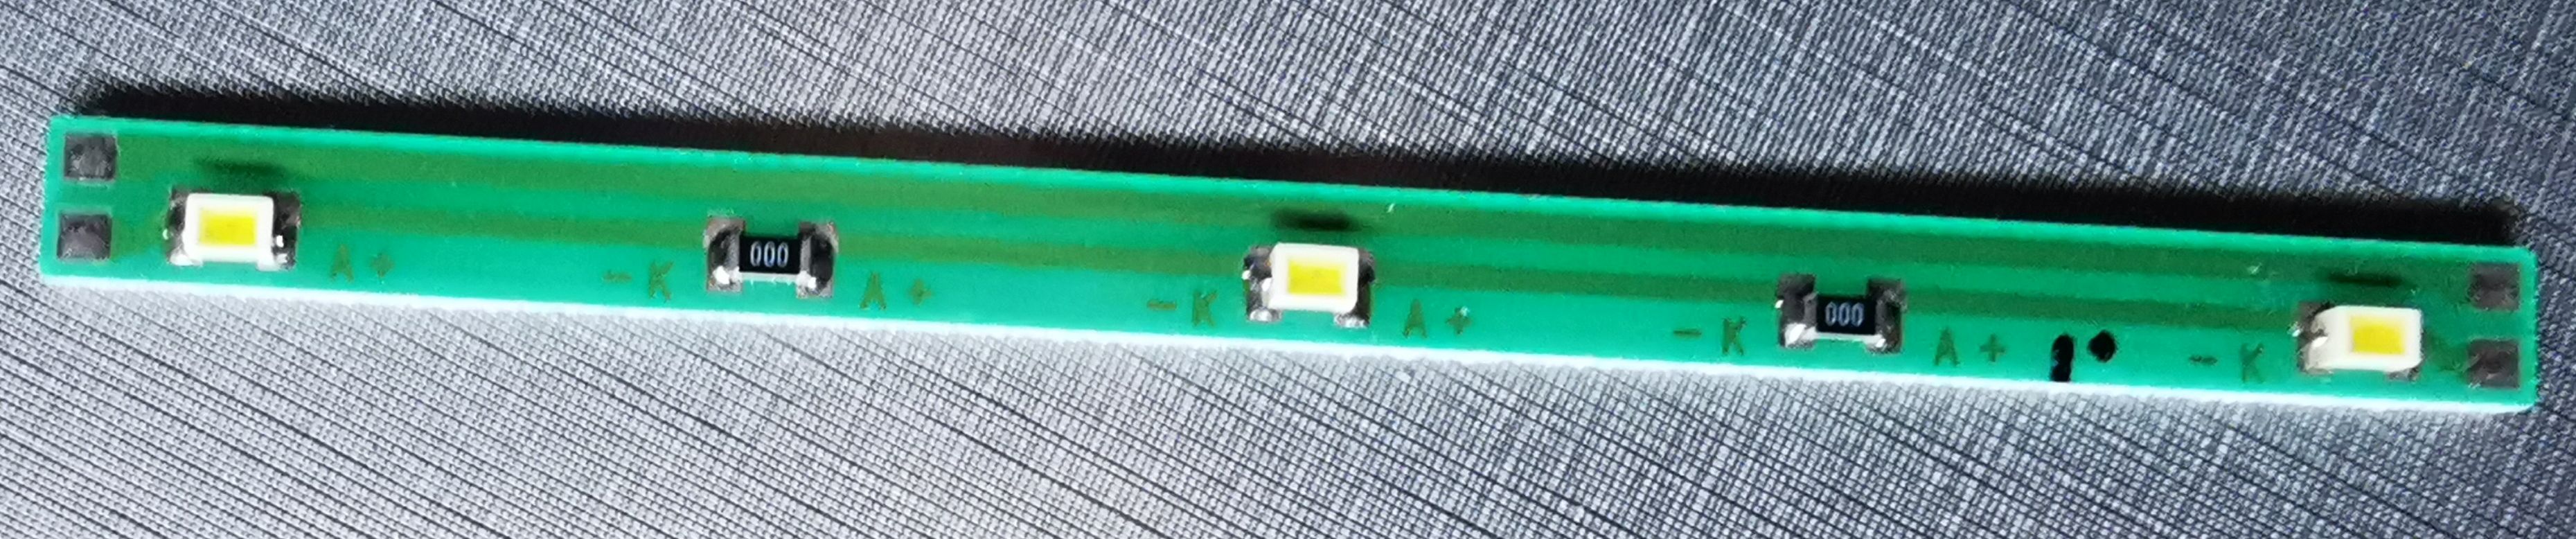 Bild LED-Leiste